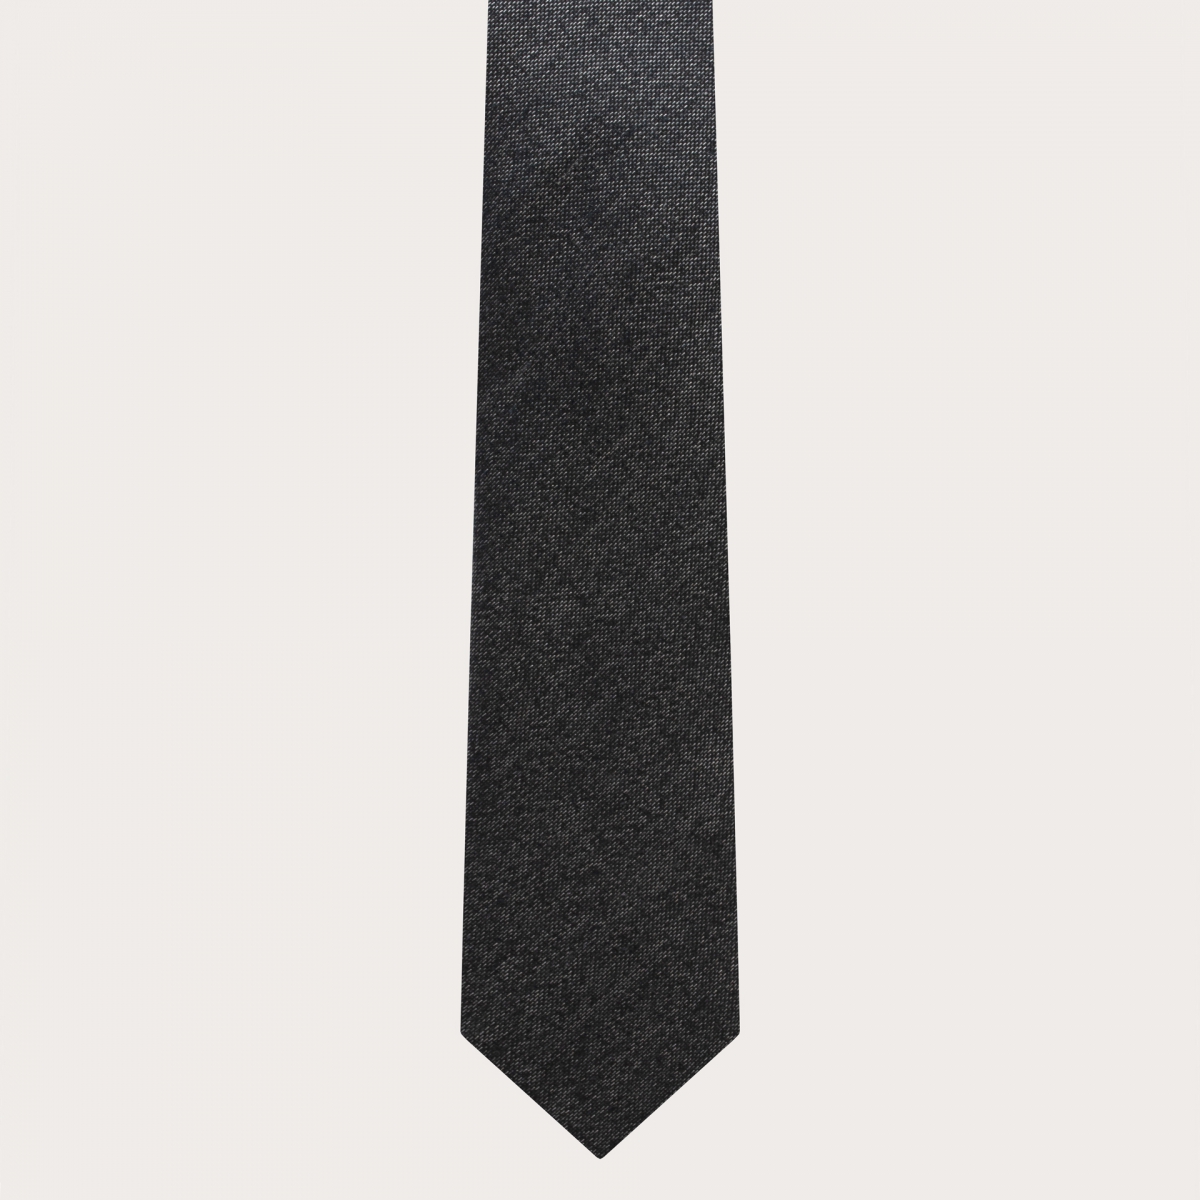 BRUCLE Raffinato set da uomo di bretelle con asole e cravatta grigio melange